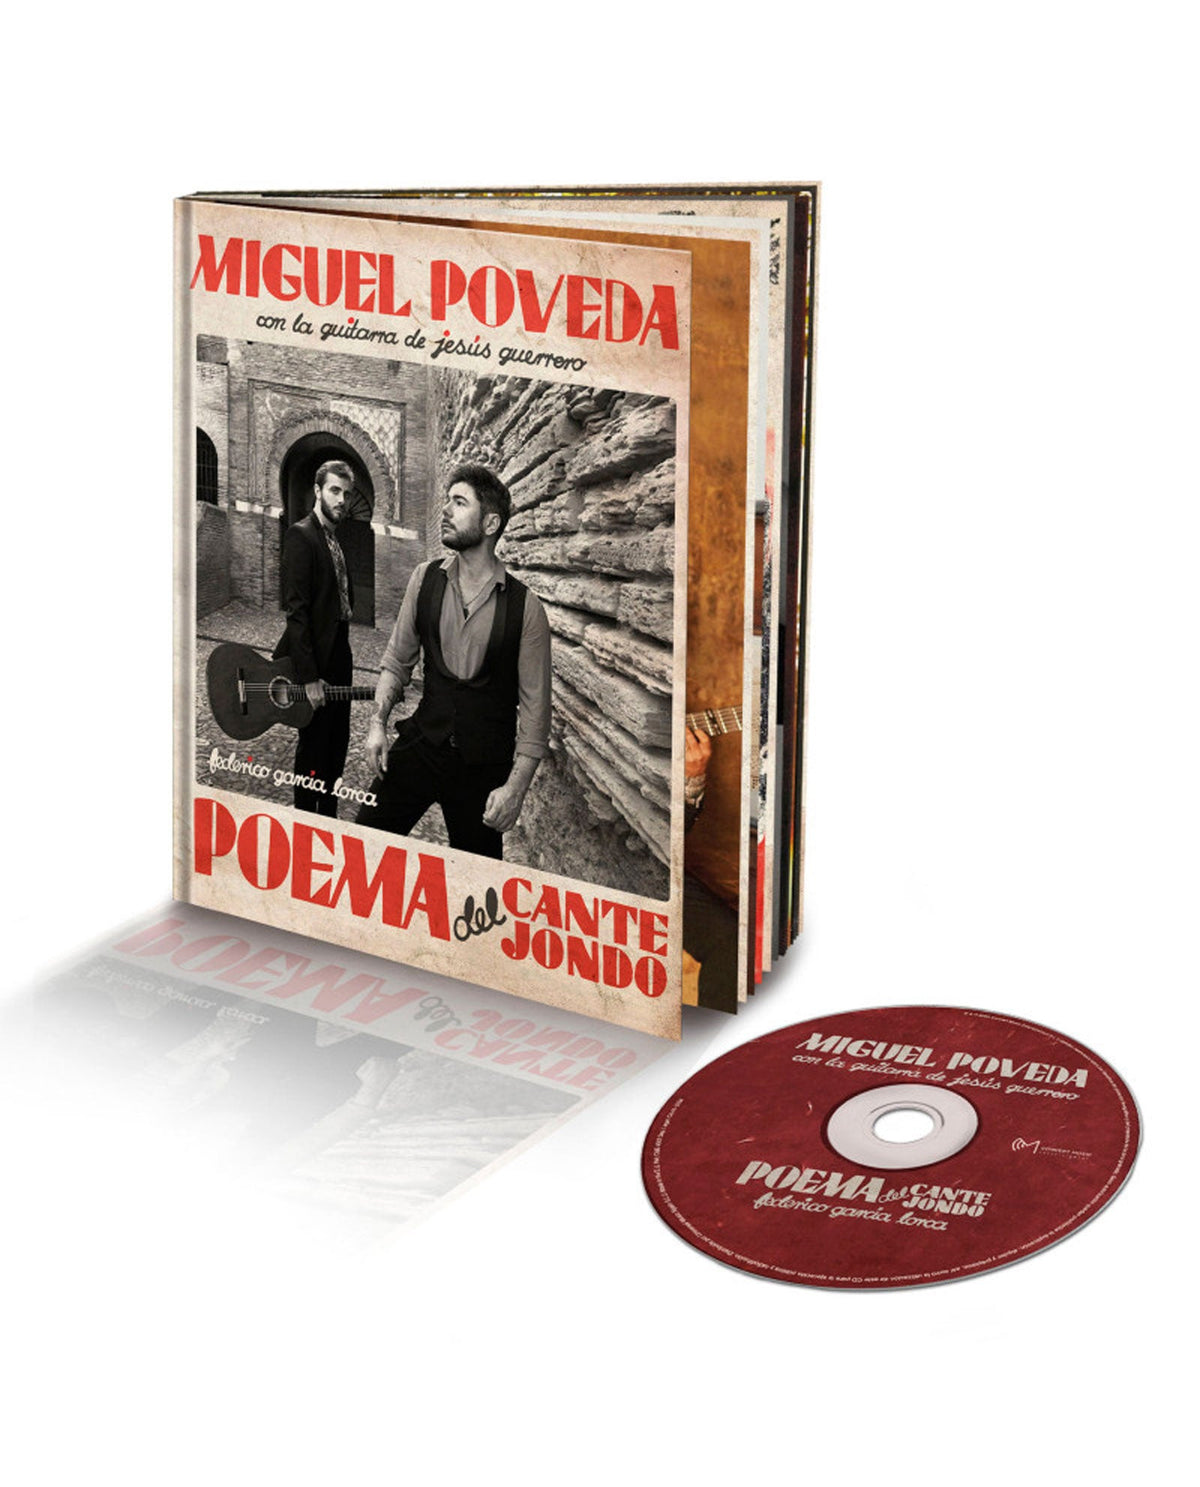 Miguel Poveda - Disco Libro "Poema del Cante Jondo" (Guitarra de Jesús Guerrero) - D2fy · Rocktud - D2fy